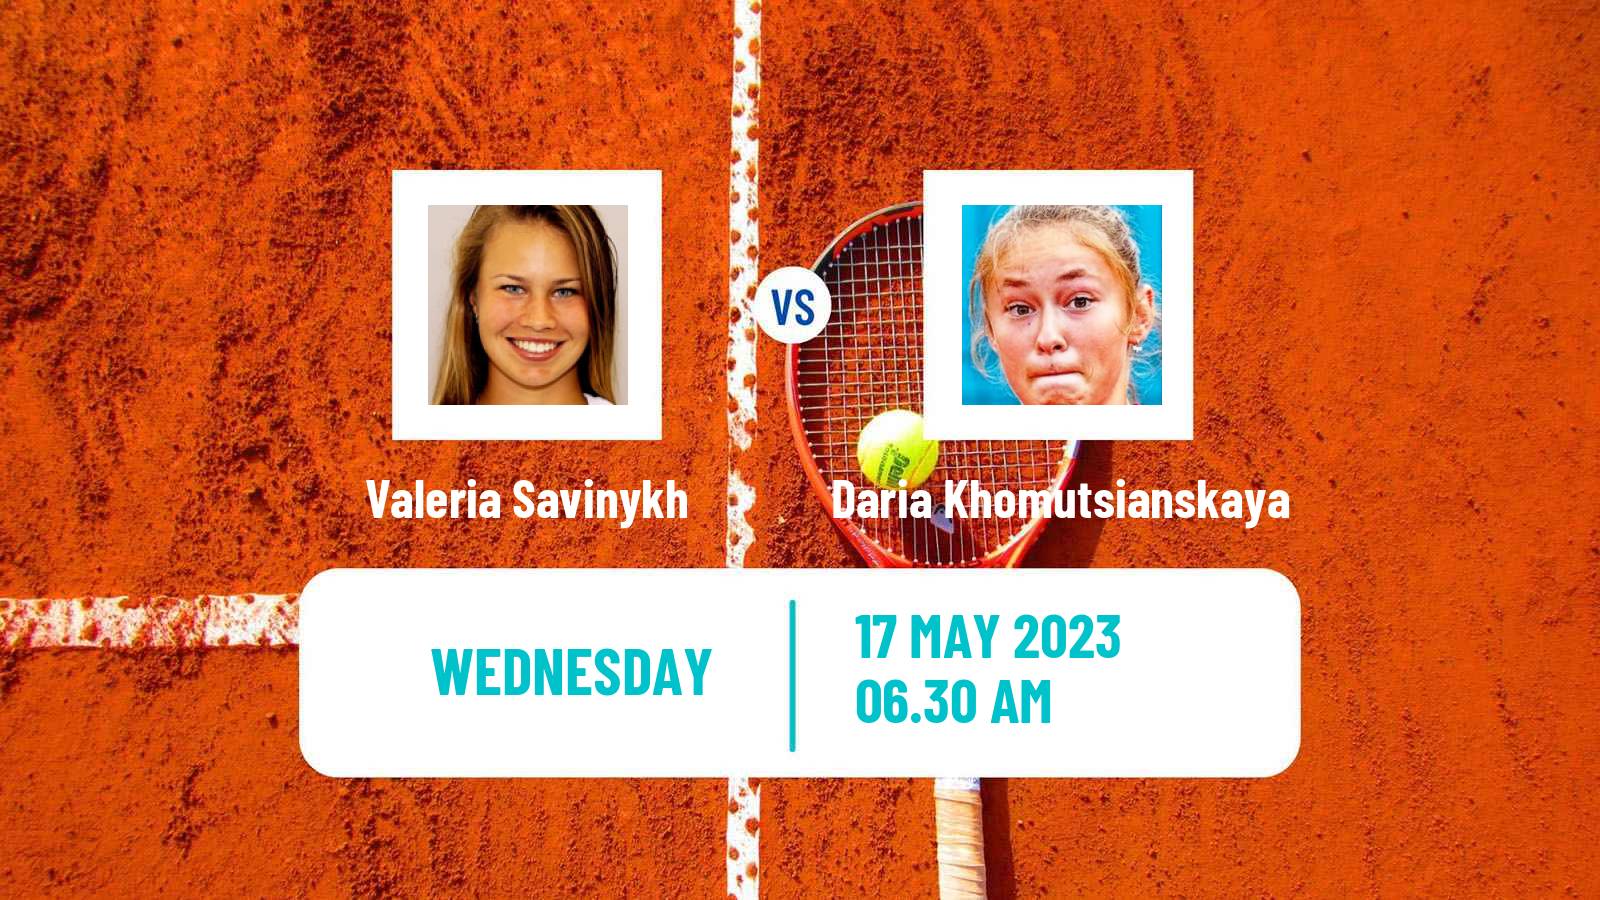 Tennis ITF W25 Kachreti 2 Women Valeria Savinykh - Daria Khomutsianskaya